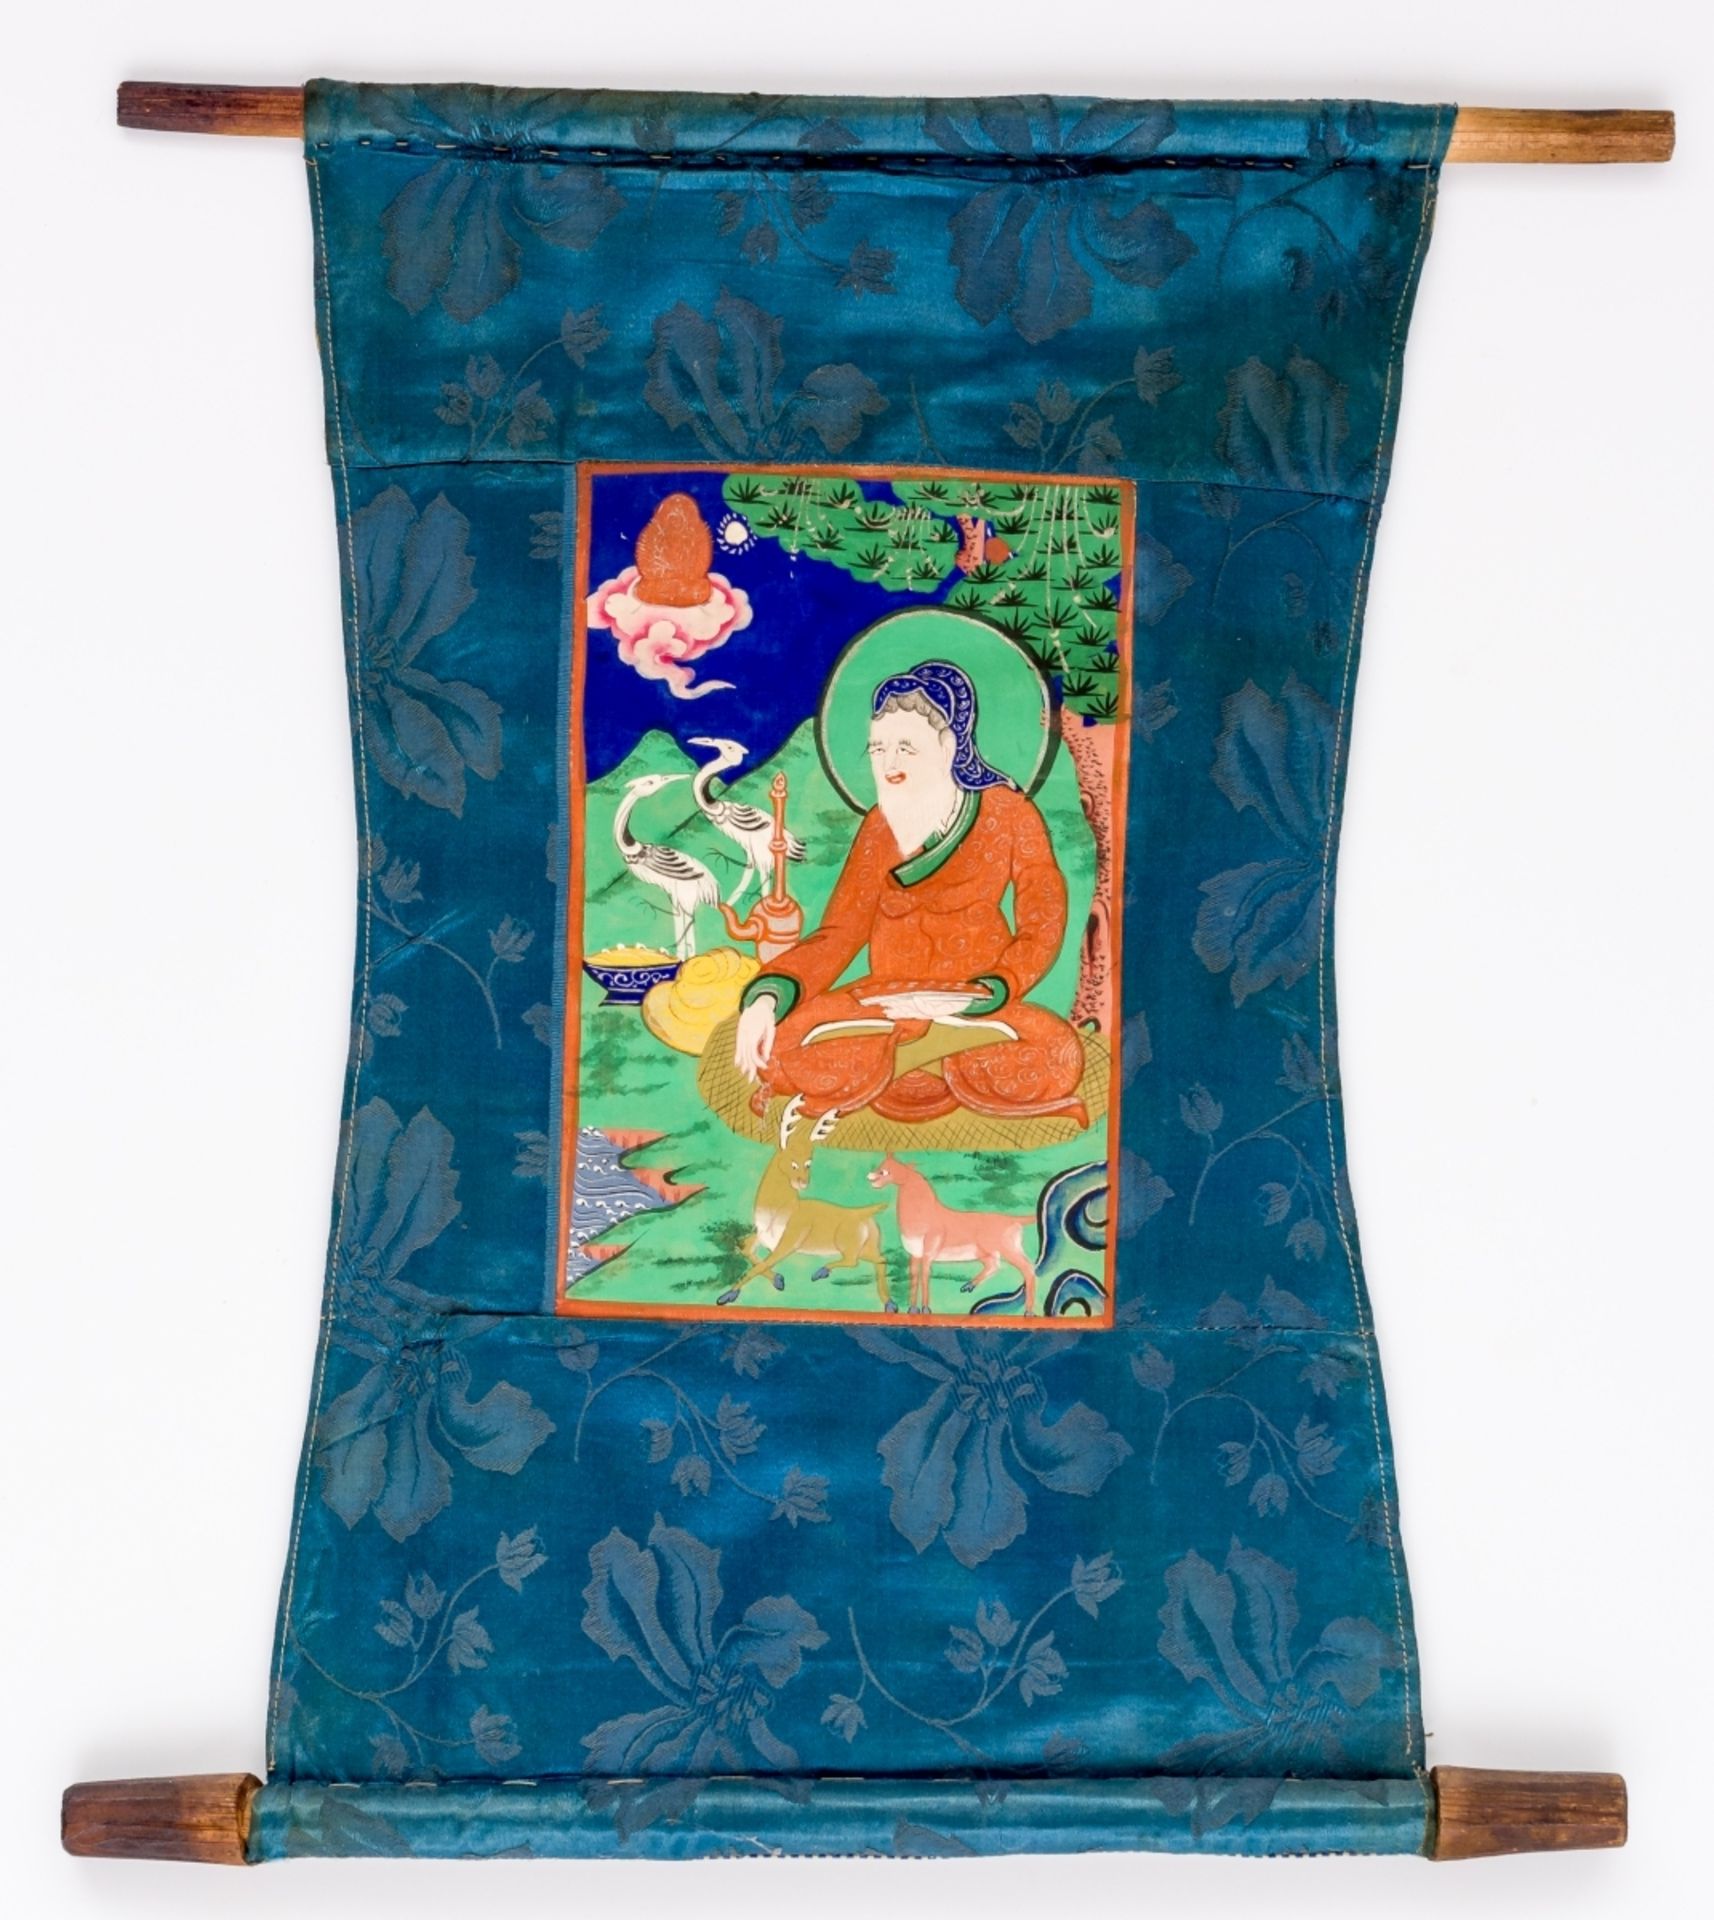 KLEINE THANGKA MIT BUDDHISTISCHEM HEILIGENMongolei, wohl um 190041 x 36 cm, Bild: 19, 5 x 13 - Bild 2 aus 3